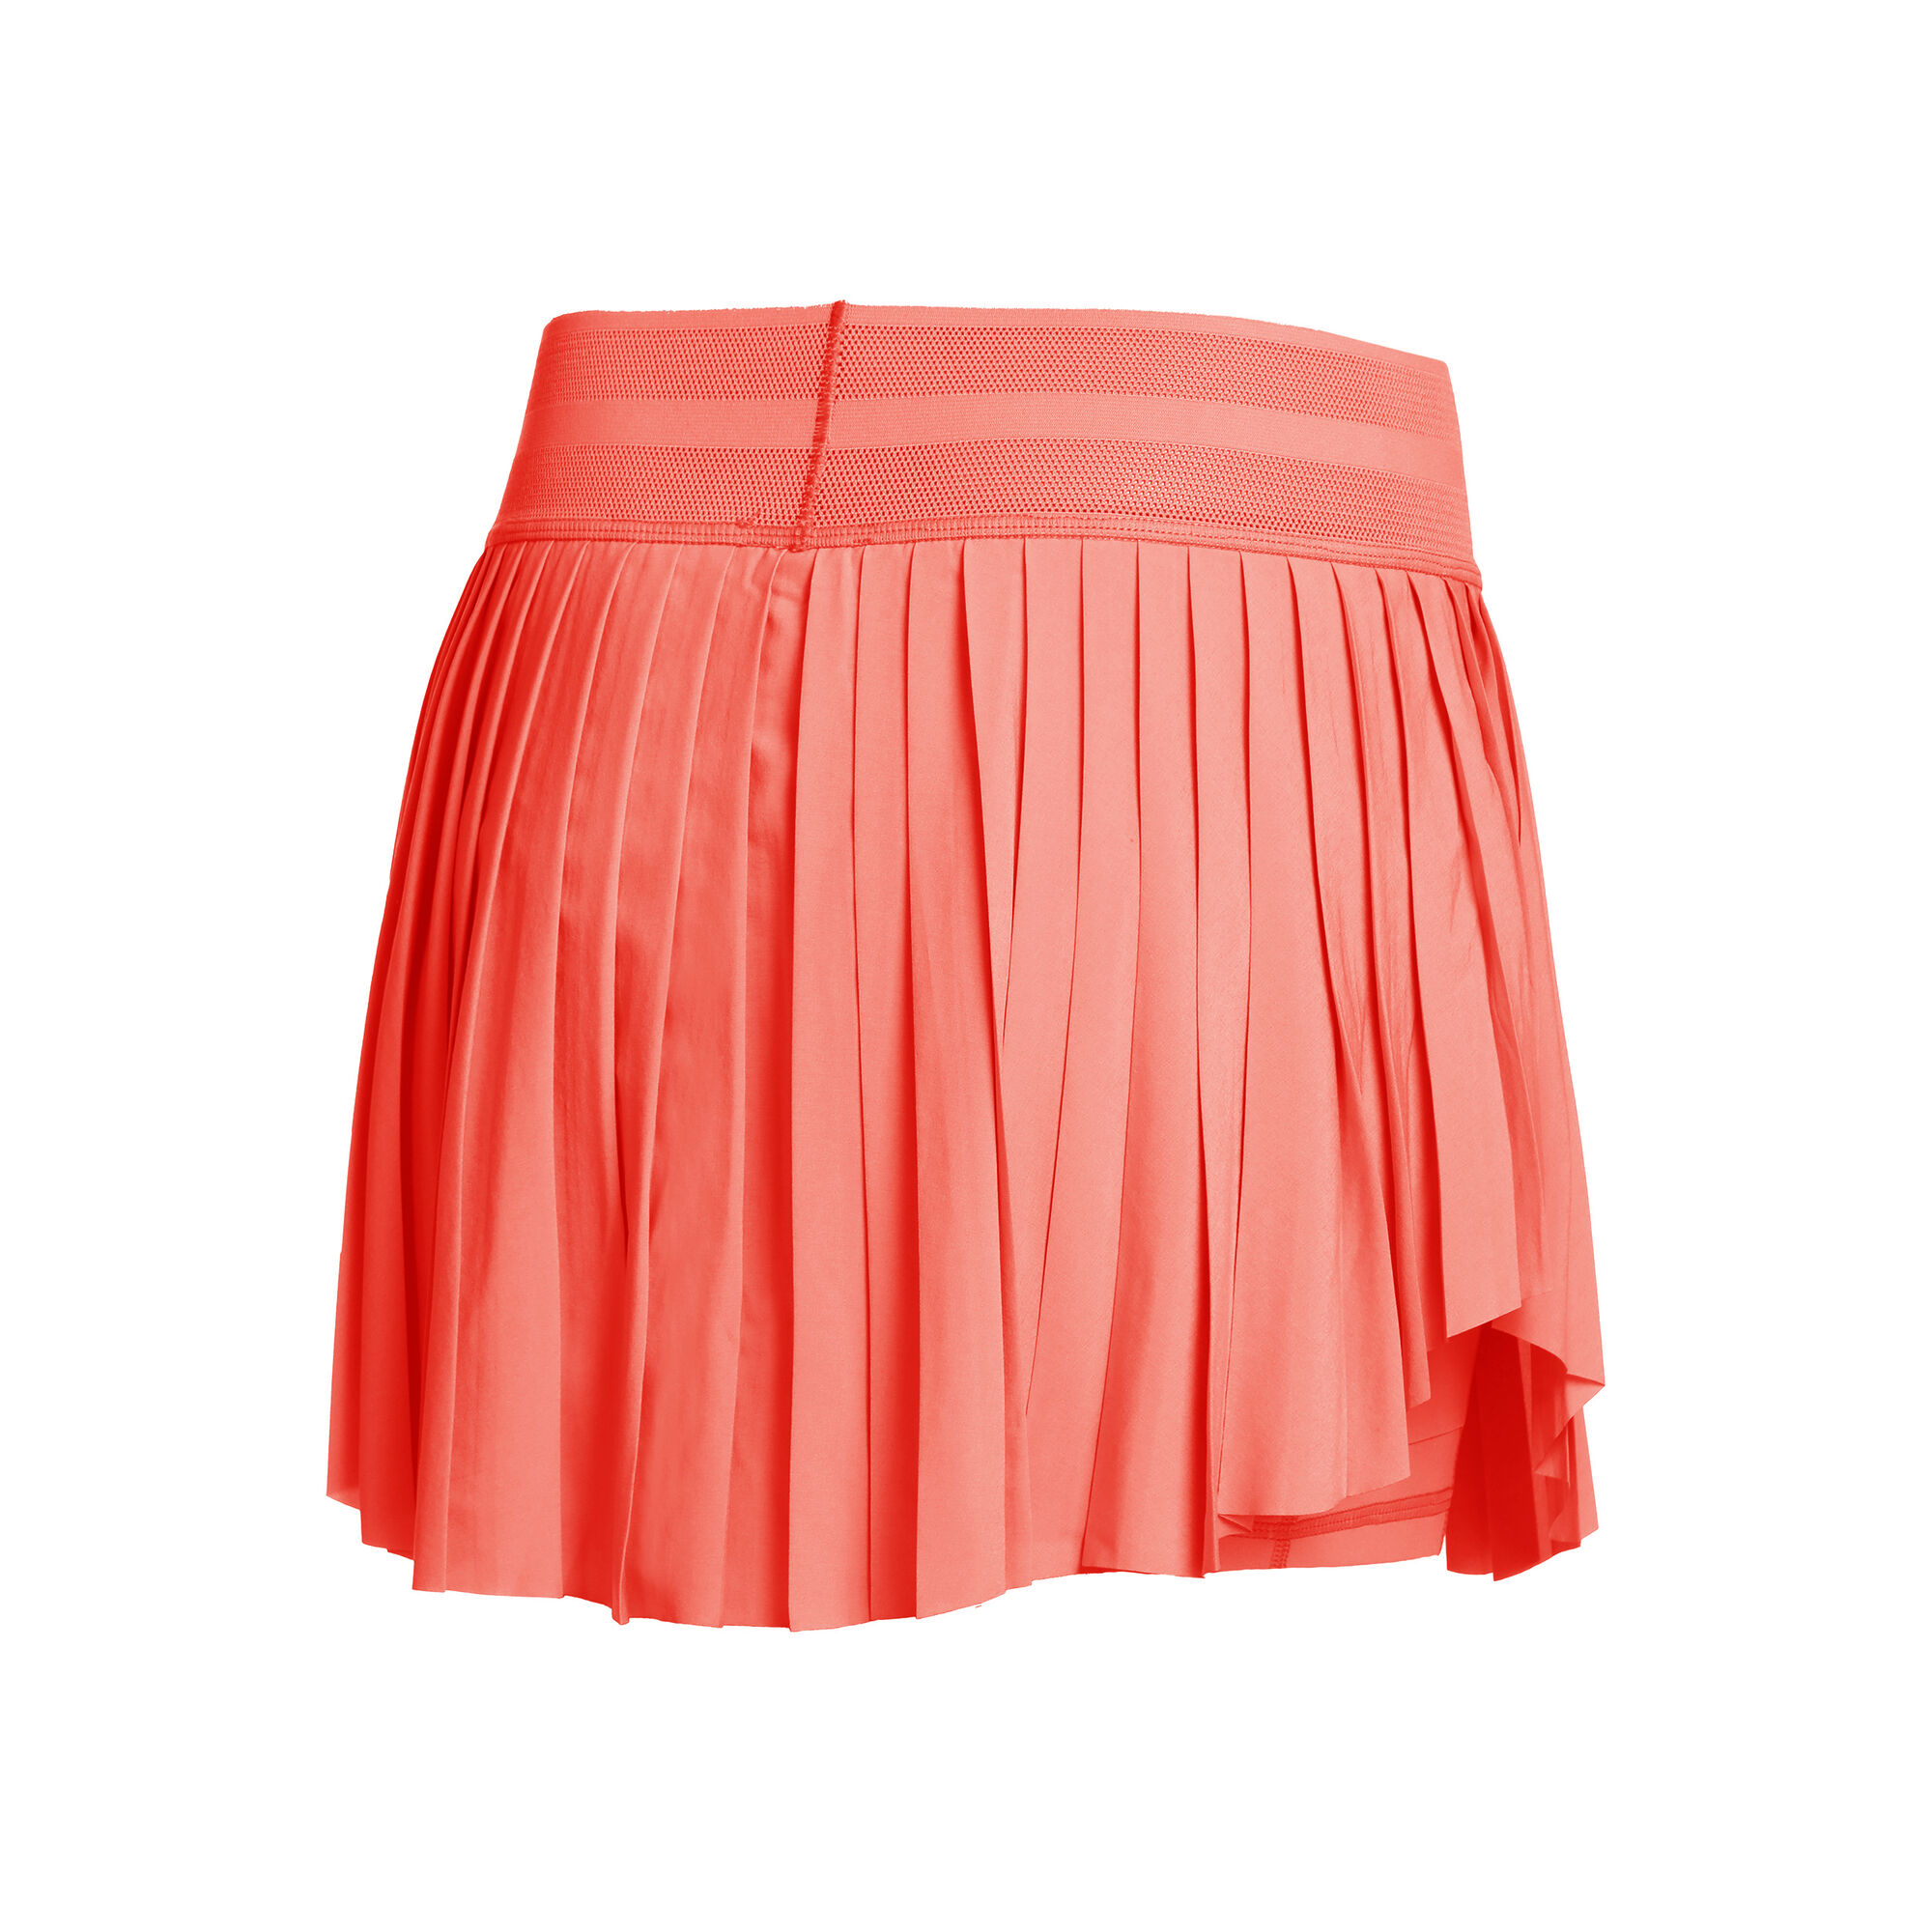 Las mejores ofertas en Calcetines Rojo tobillo de Poliéster para Mujer